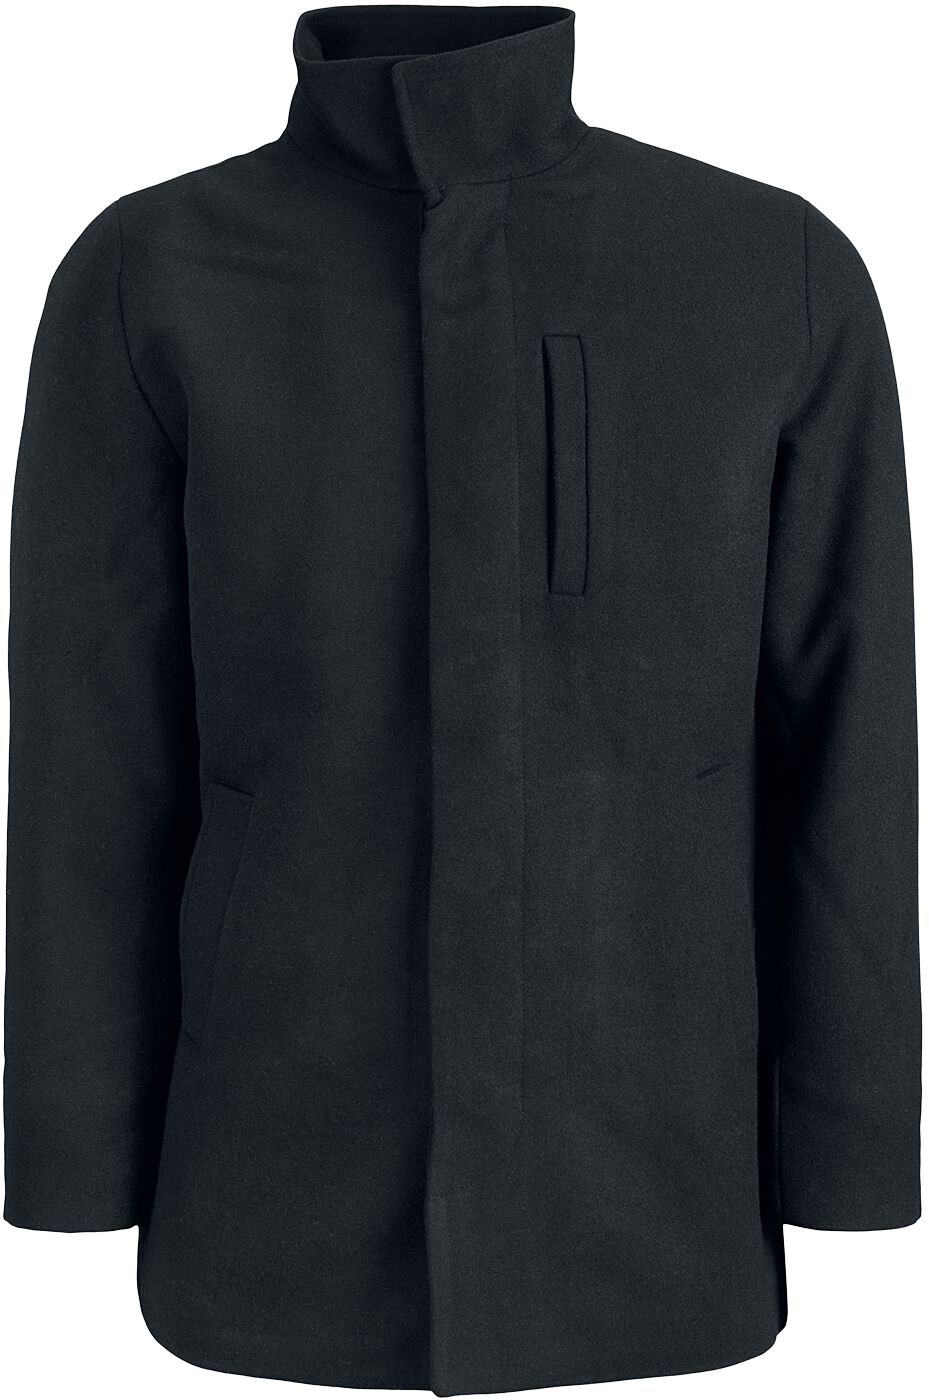 Jack & Jones Winterjacke - Dunham Wool Jacket - S bis XL - für Männer - Größe L - schwarz